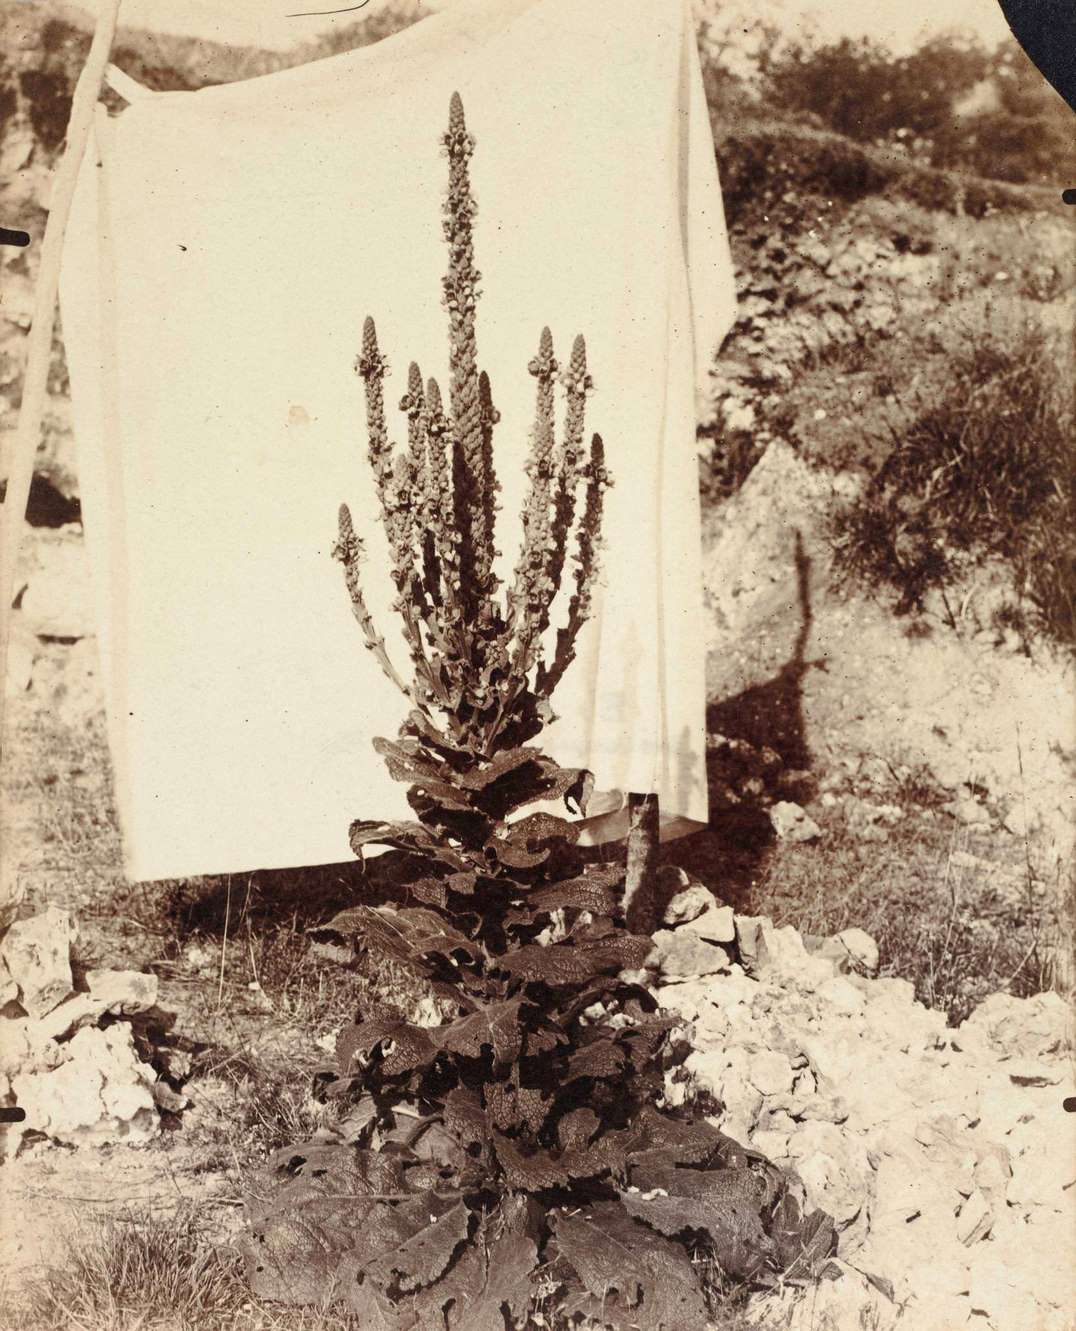 Mullein in Bloom, 1899